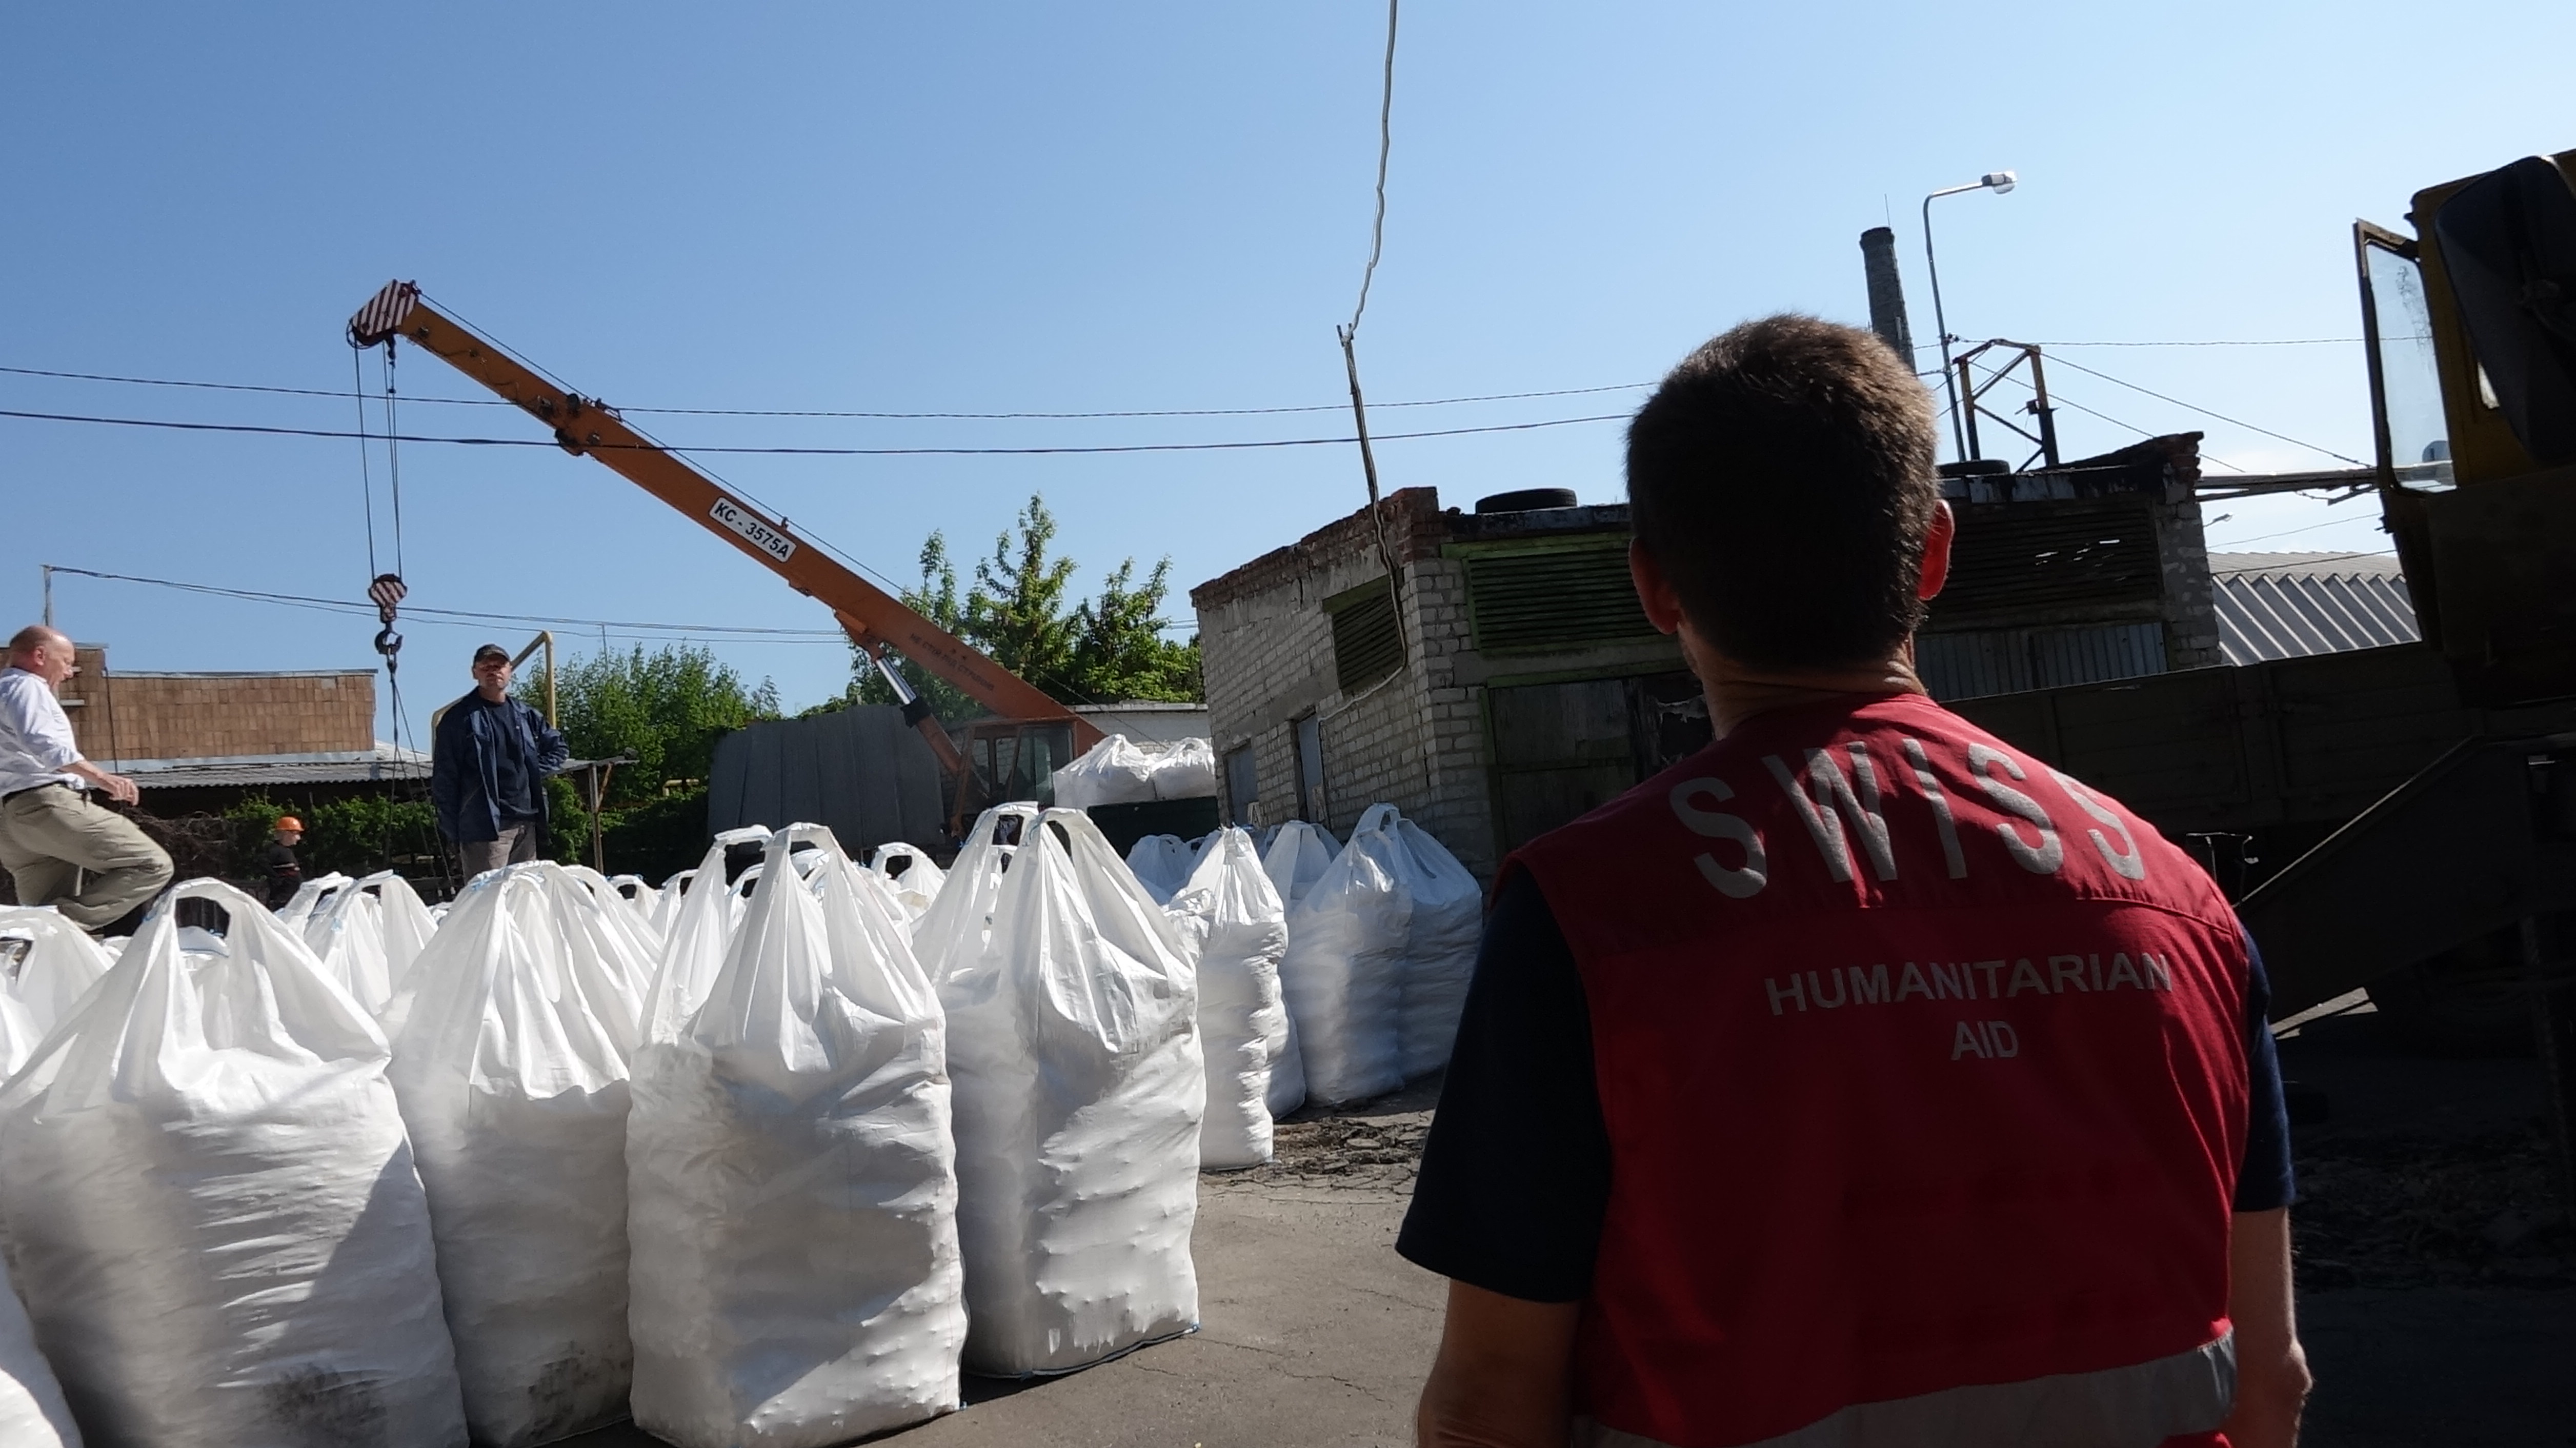 Der erste Schweizer Hilfskonvoi für die Menschen in der Ostukraine erreicht Donetsk. Die Schweiz hatte 300t chemische Produkten zur Trinkwasseraufbereitung geschickt.